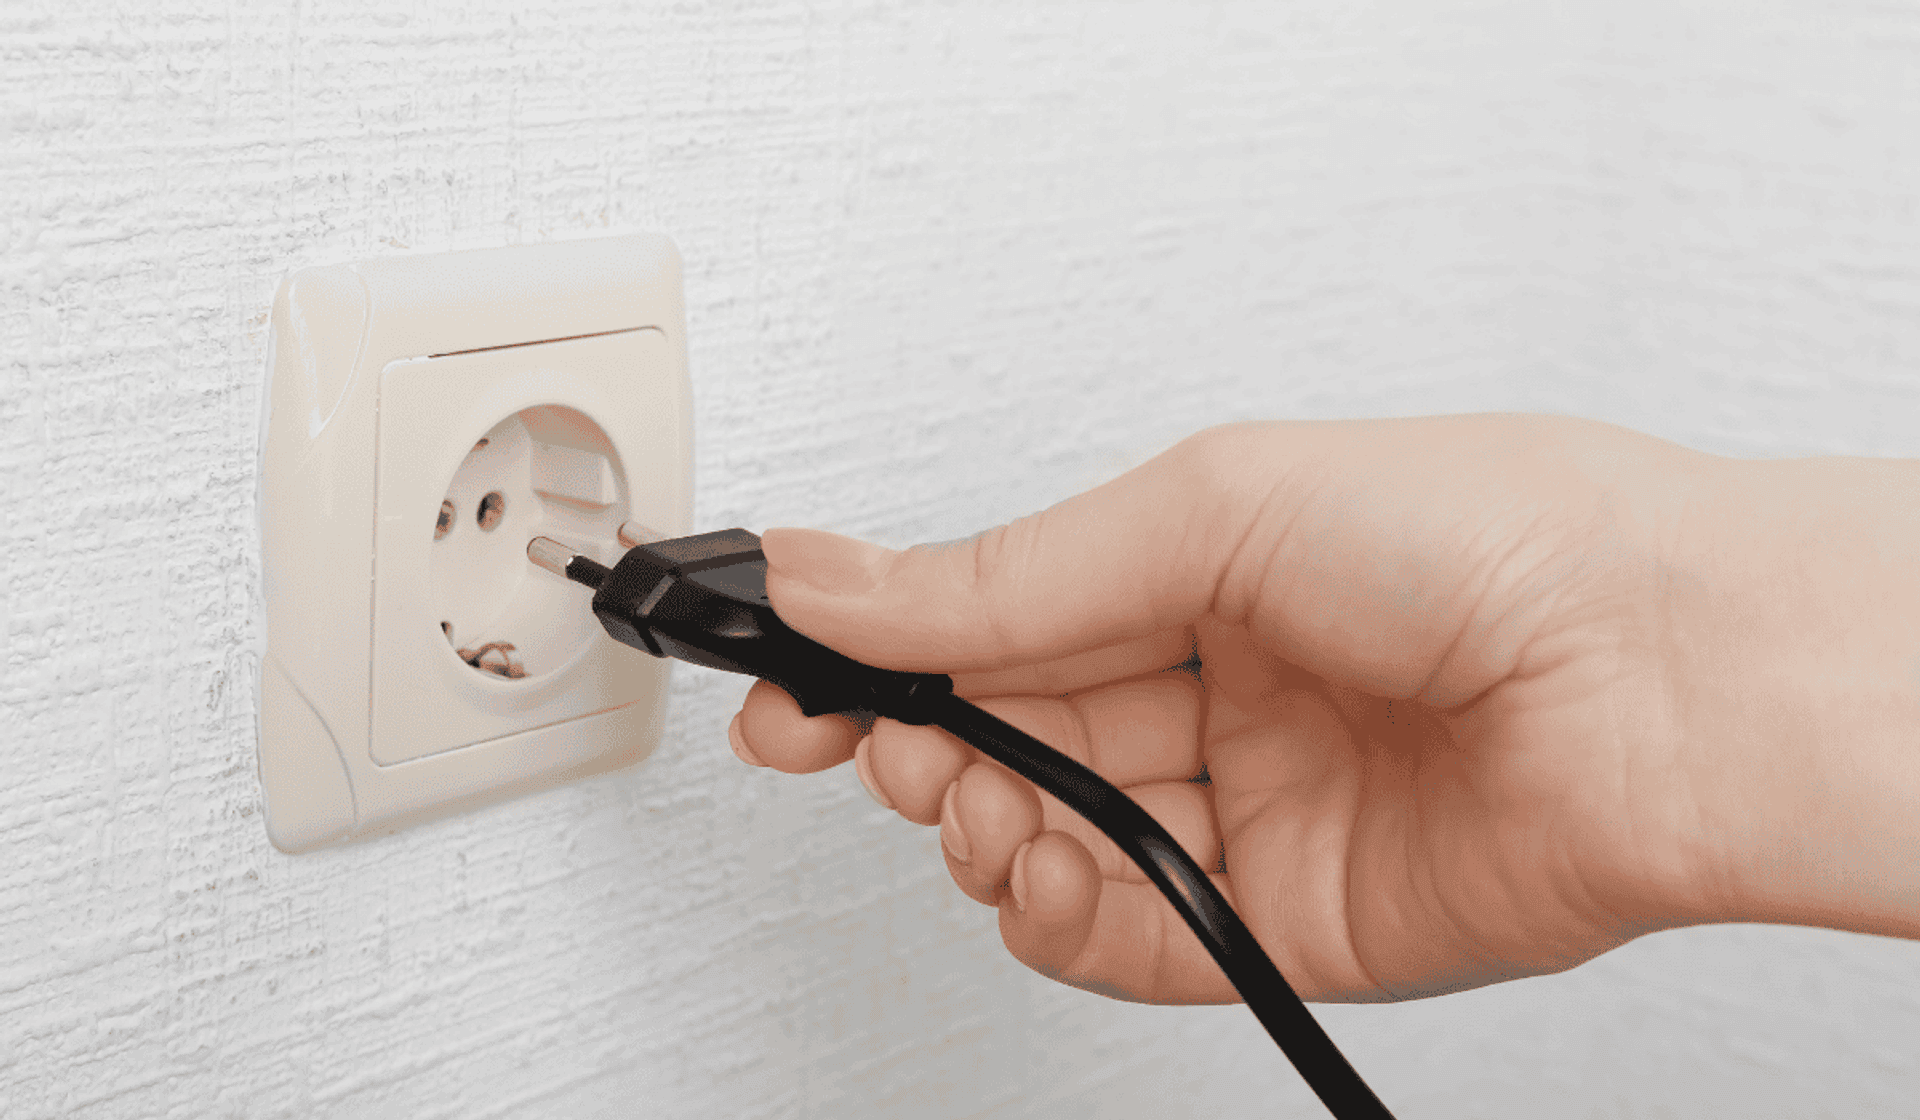 oszczędzanie prądu